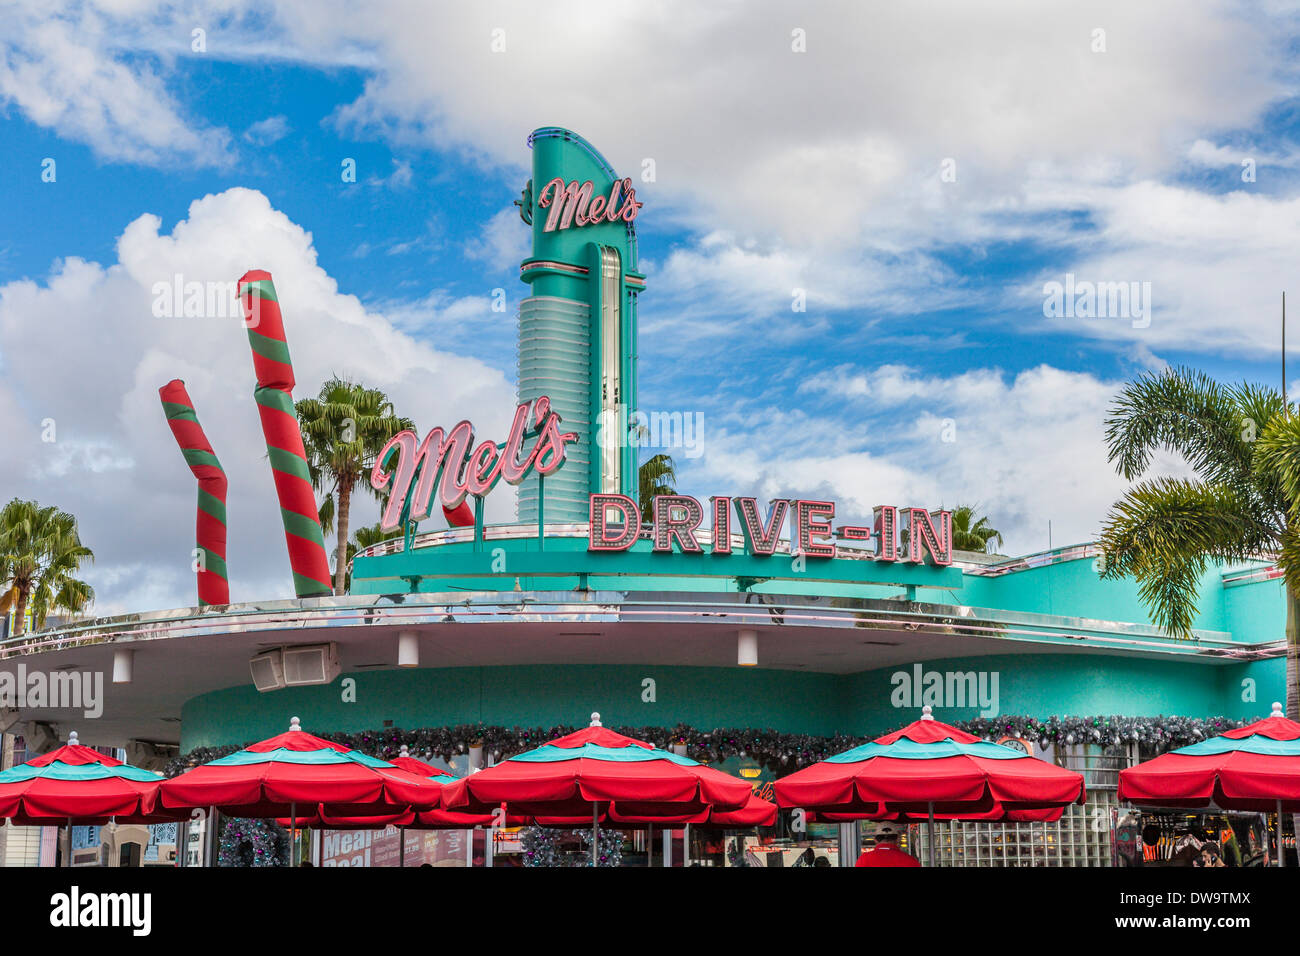 Insegna al neon sulla sommità della Mel's Drive-in ristorante presso gli Universal Studios, il parco a tema di Orlando, Florida Foto Stock